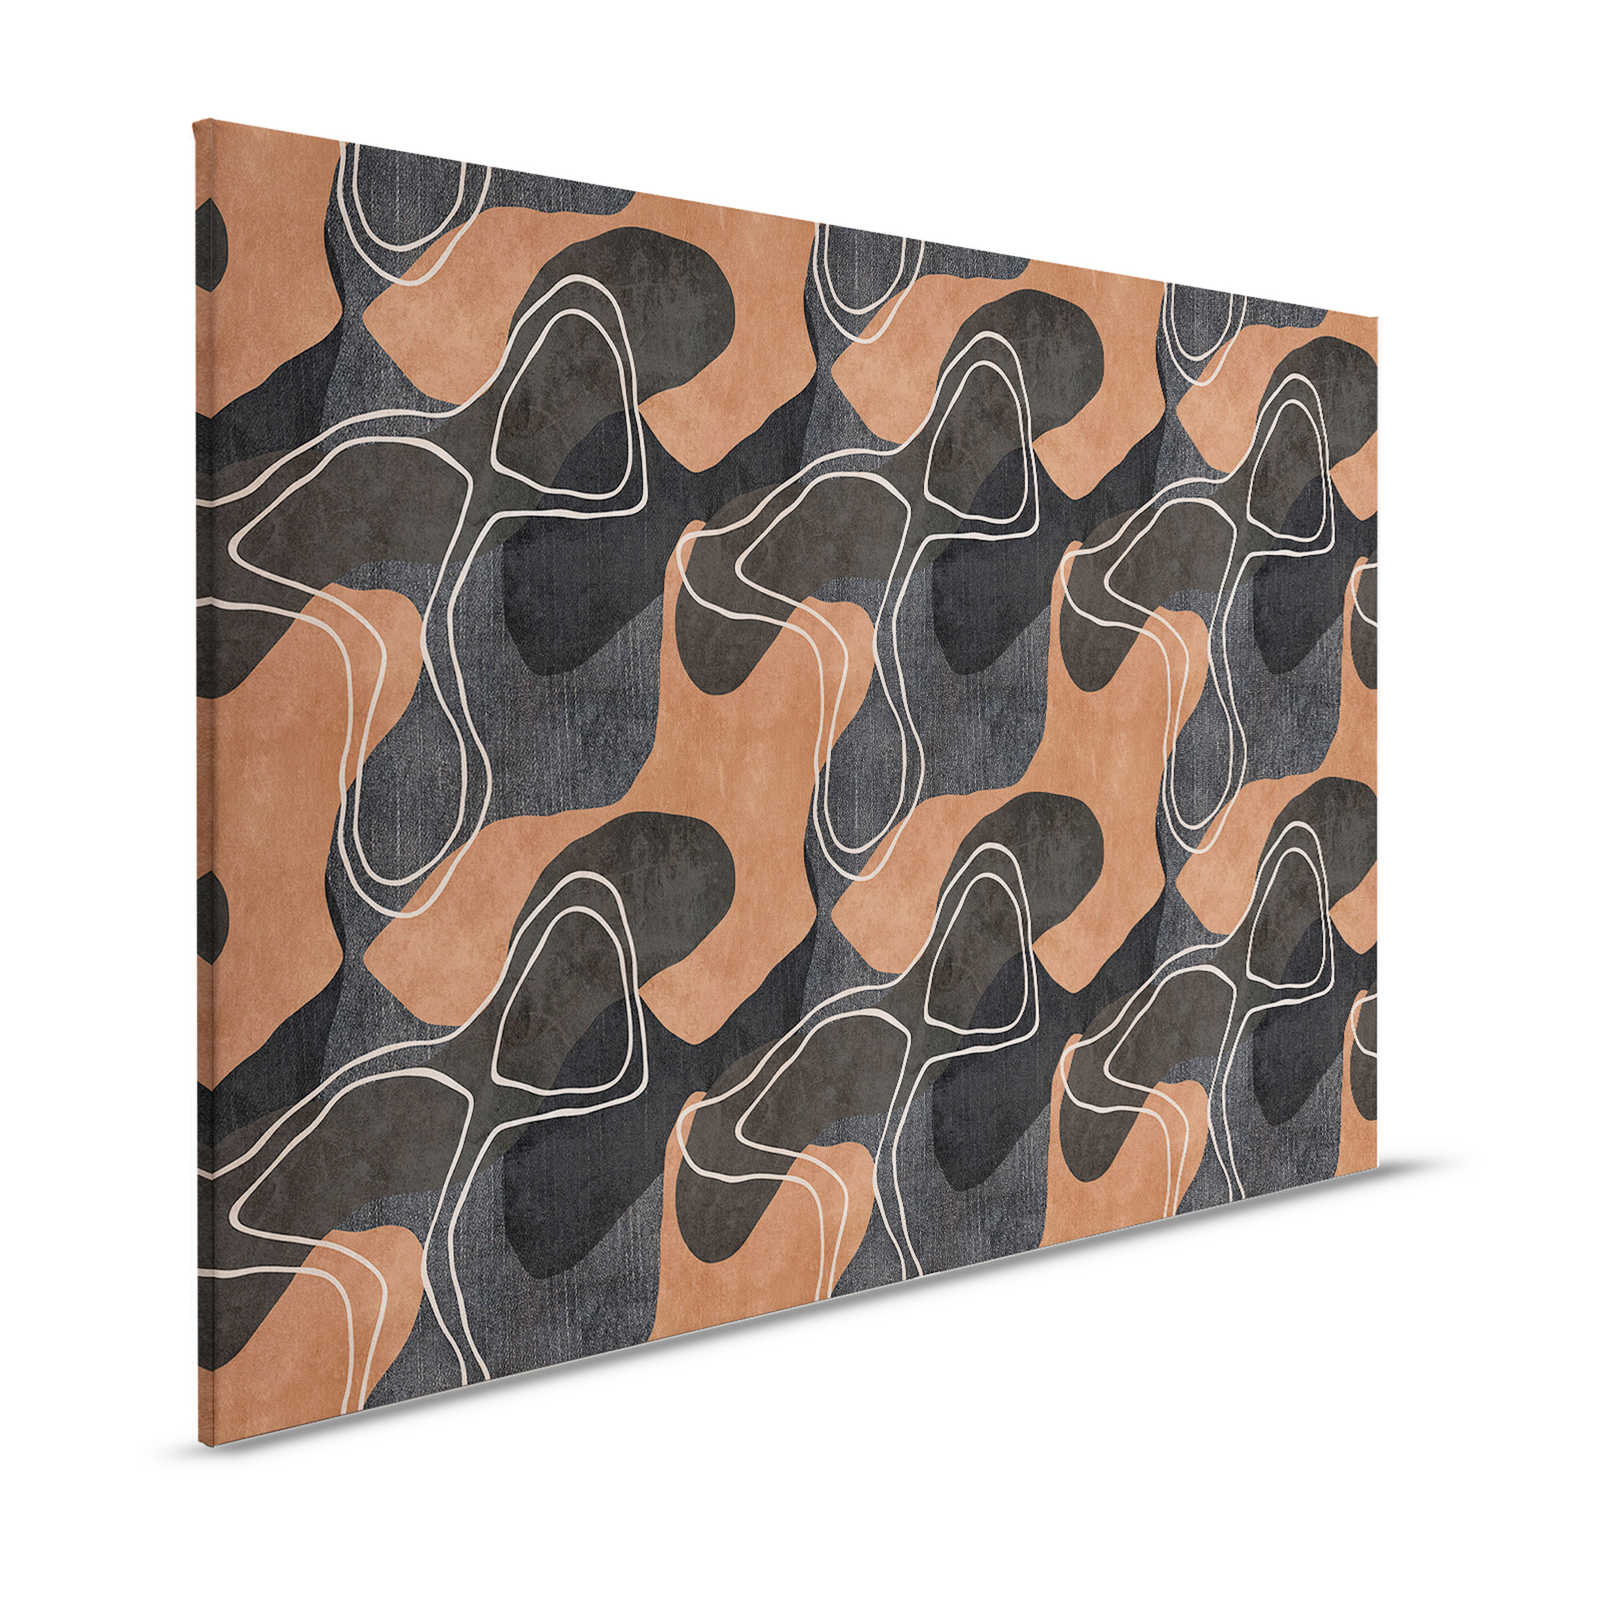 Terra 1 - Ethno canvas schilderij met abstract ontwerp in aardetinten - 1.20 m x 0.80 m
